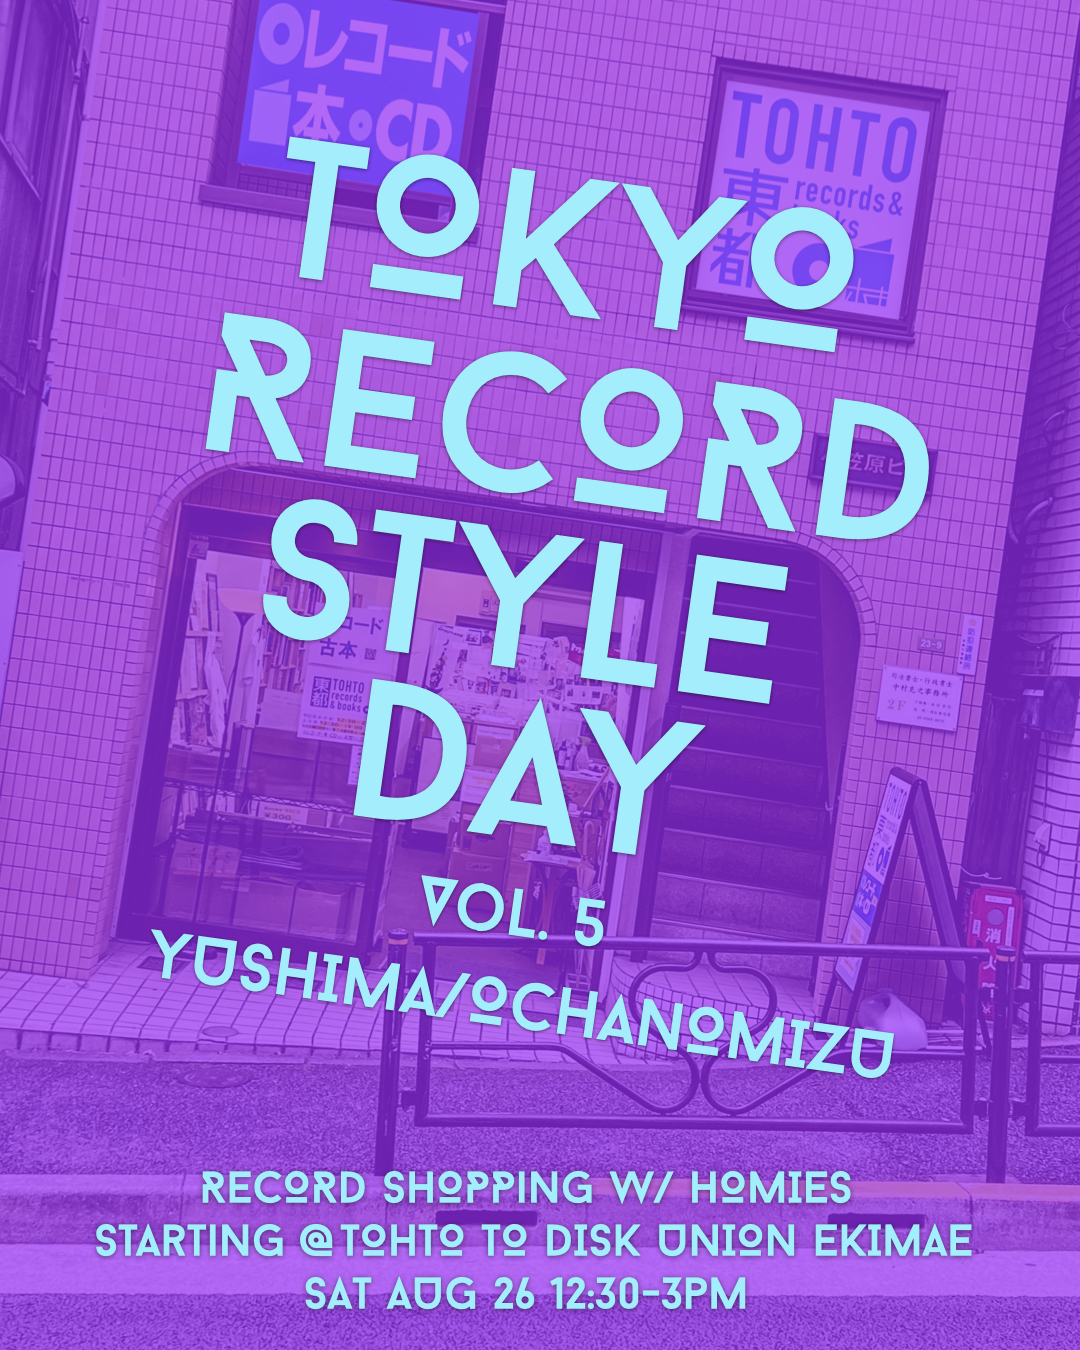 Tokyo Record Style Day Vol. 5 – Yushima/Ochanomizu